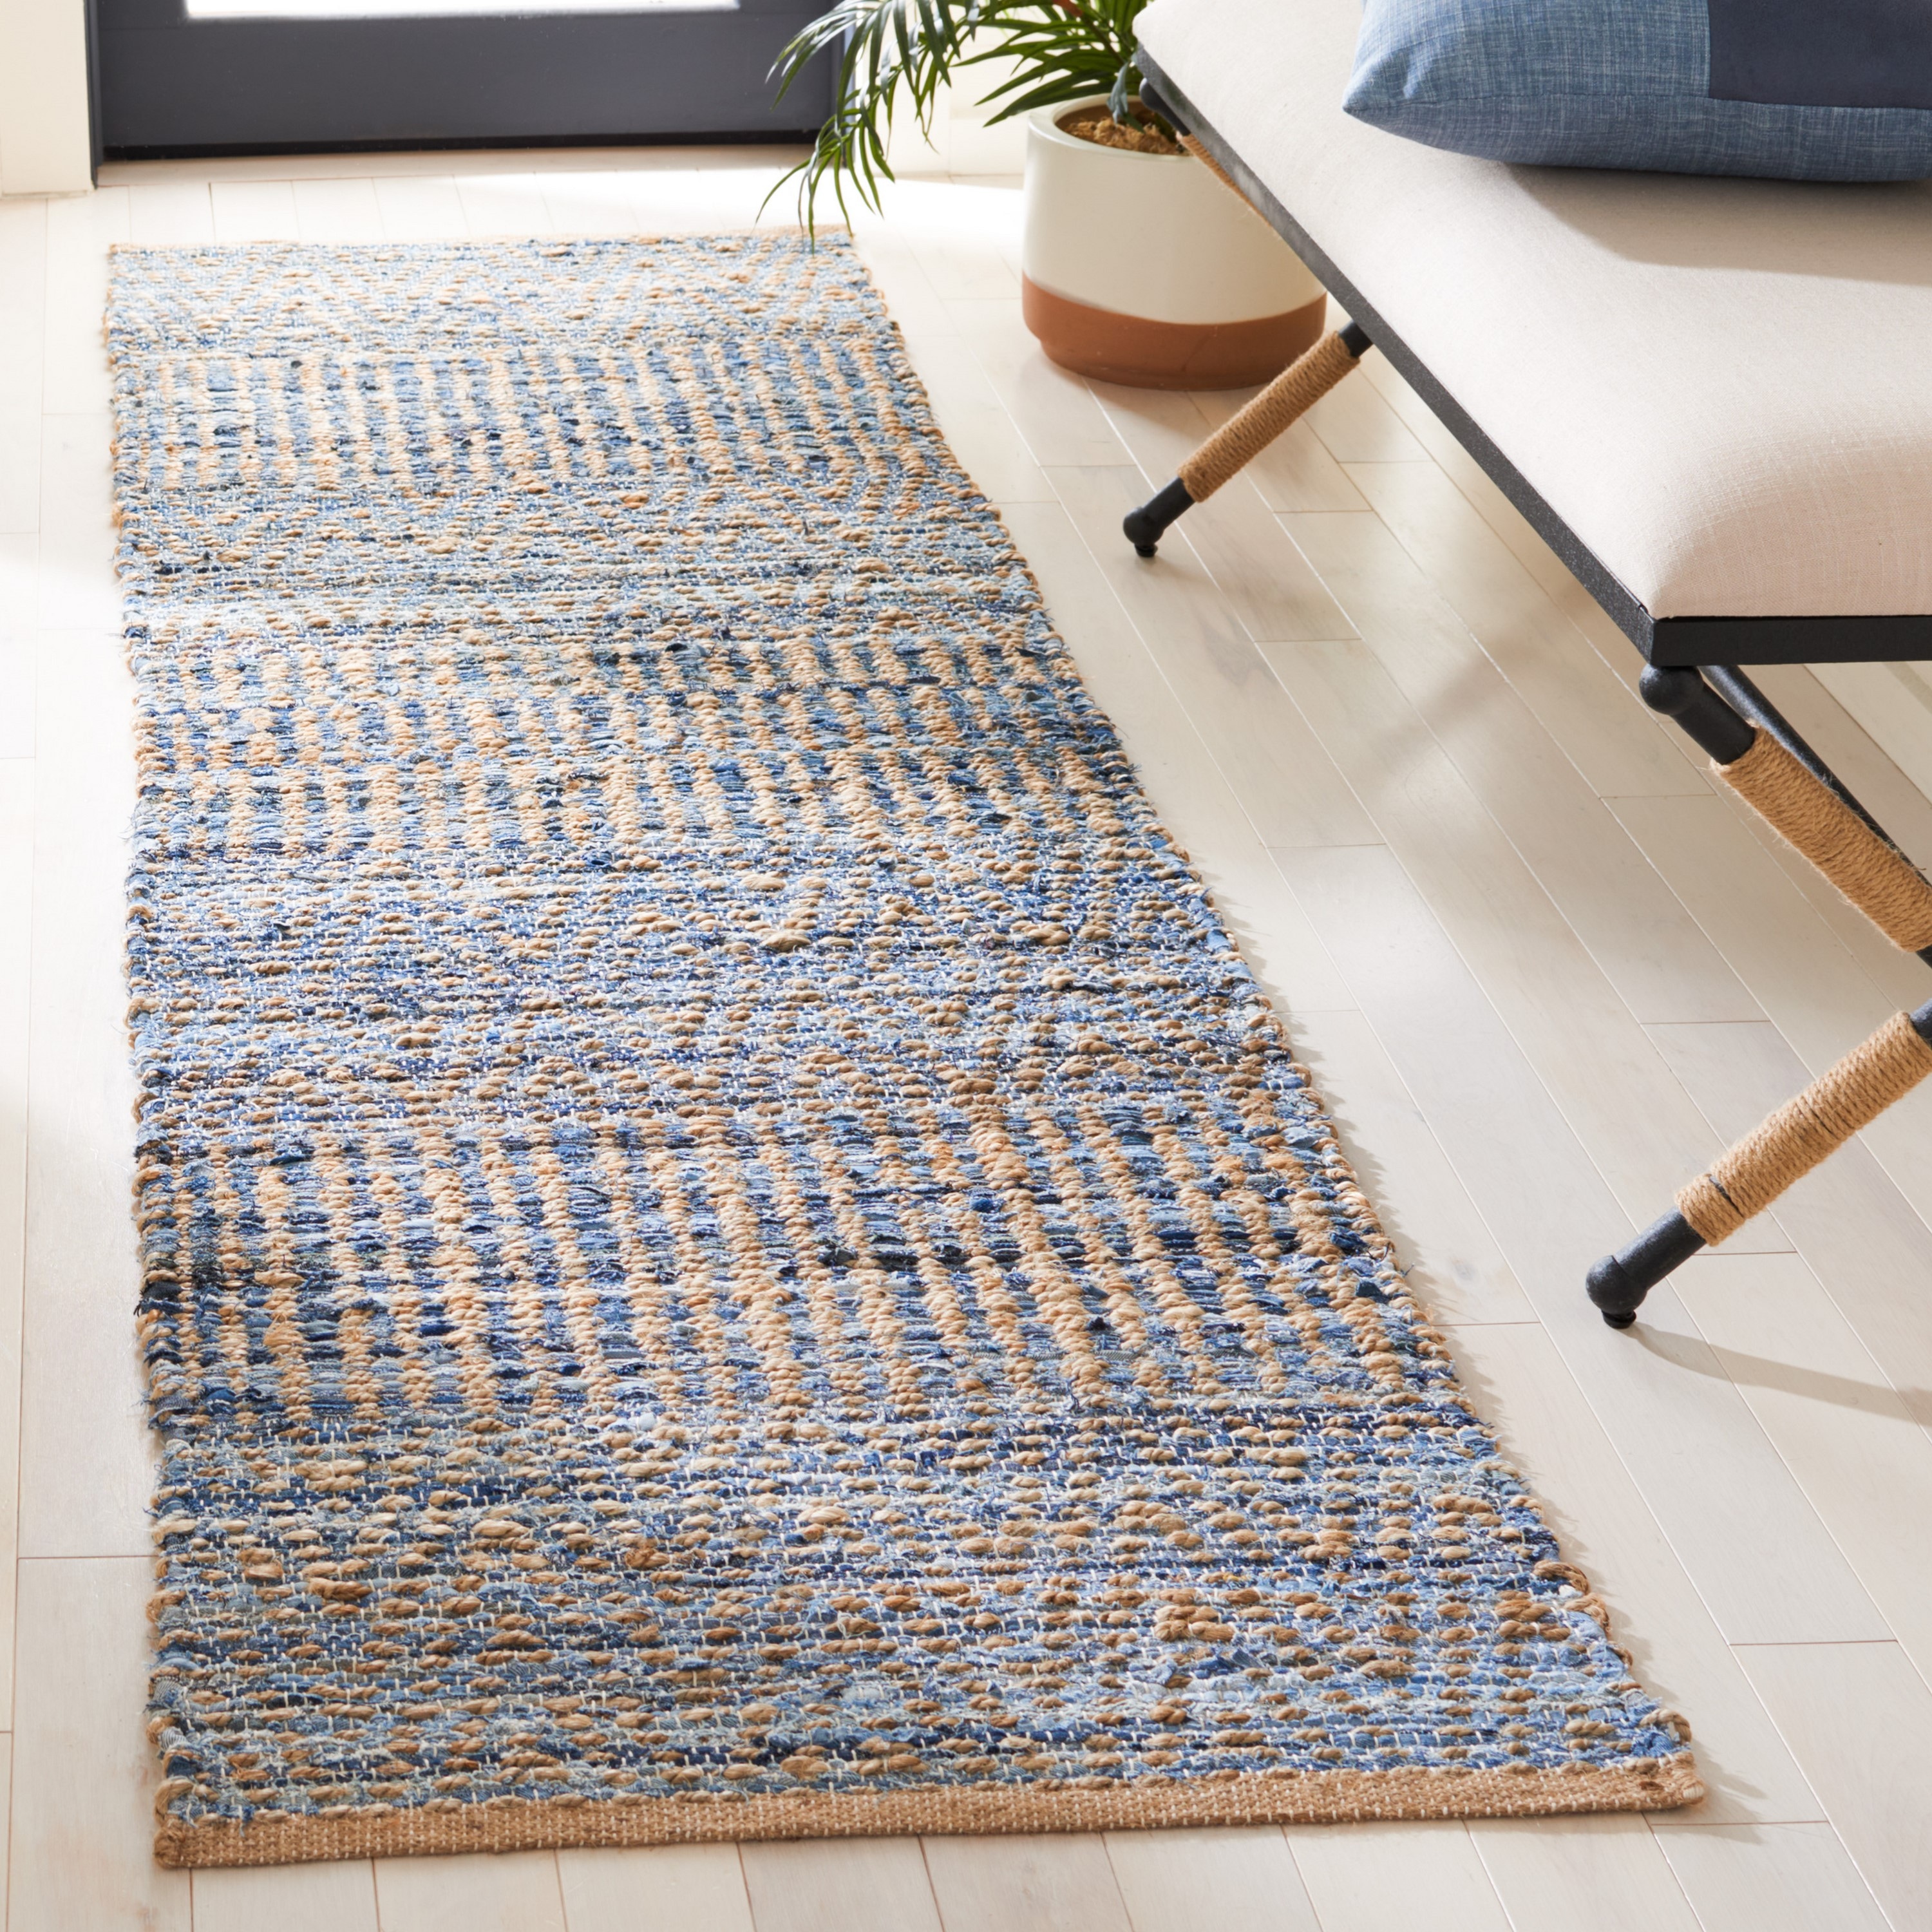 Jute Floor Mat With Beige and Blue Rectangular Shape- 4 X 6 FT Carpet